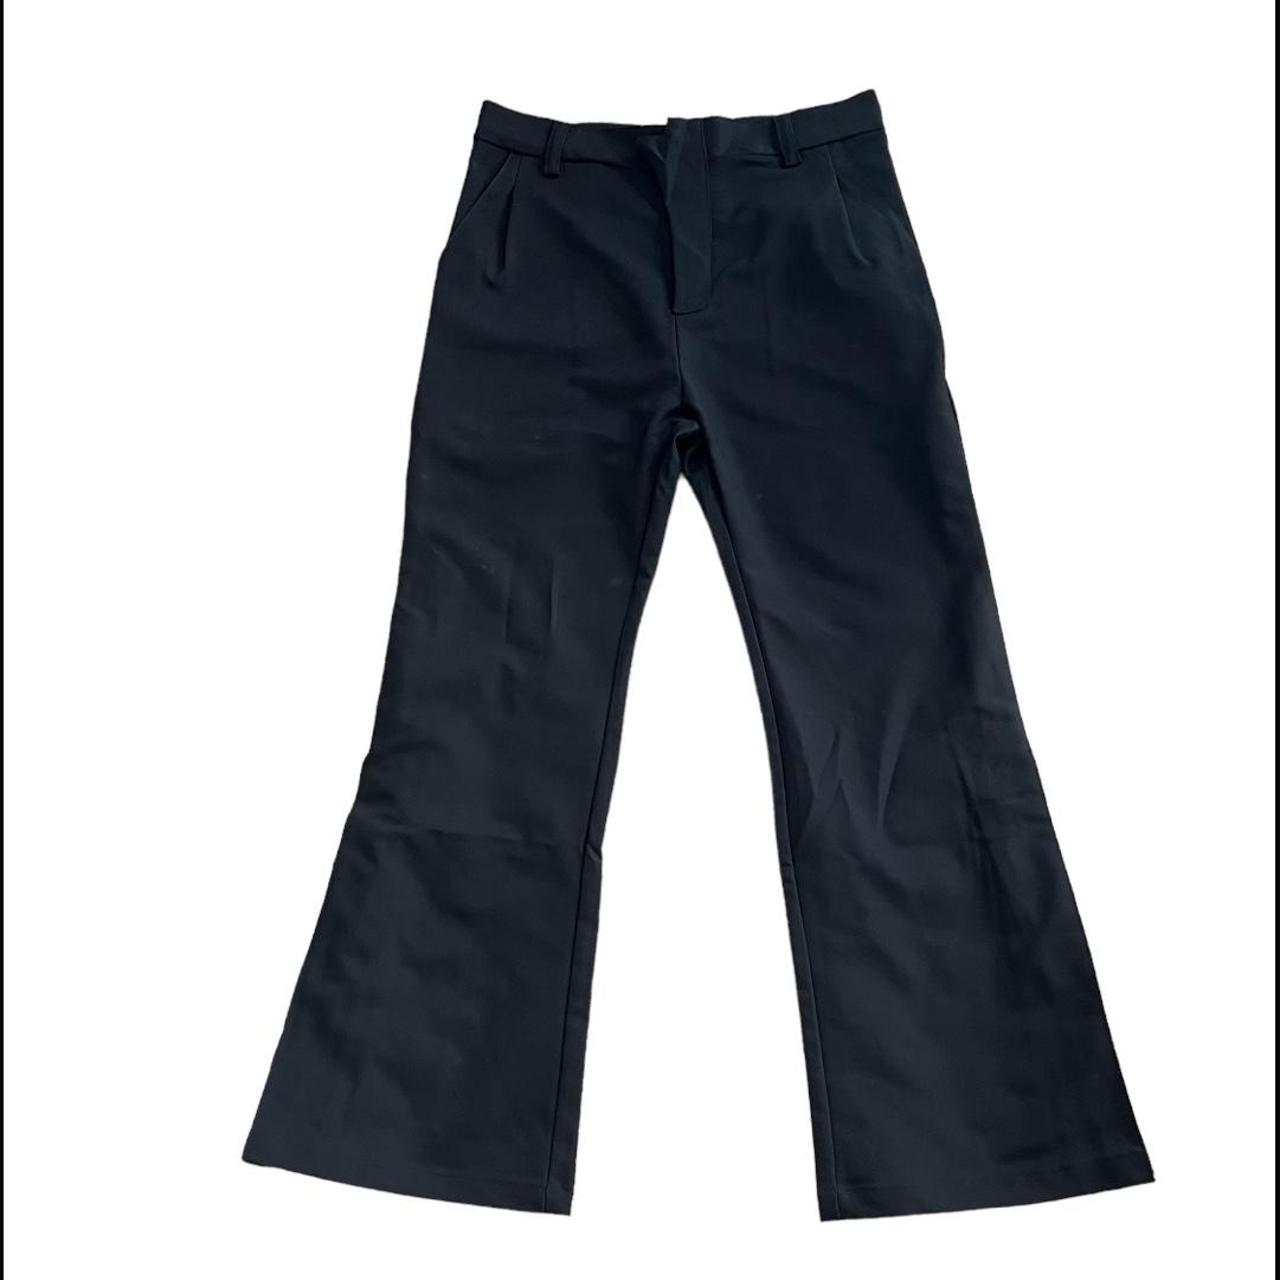 Cmma Wear Black Flared Pants Adjustable flare zipper... - Depop